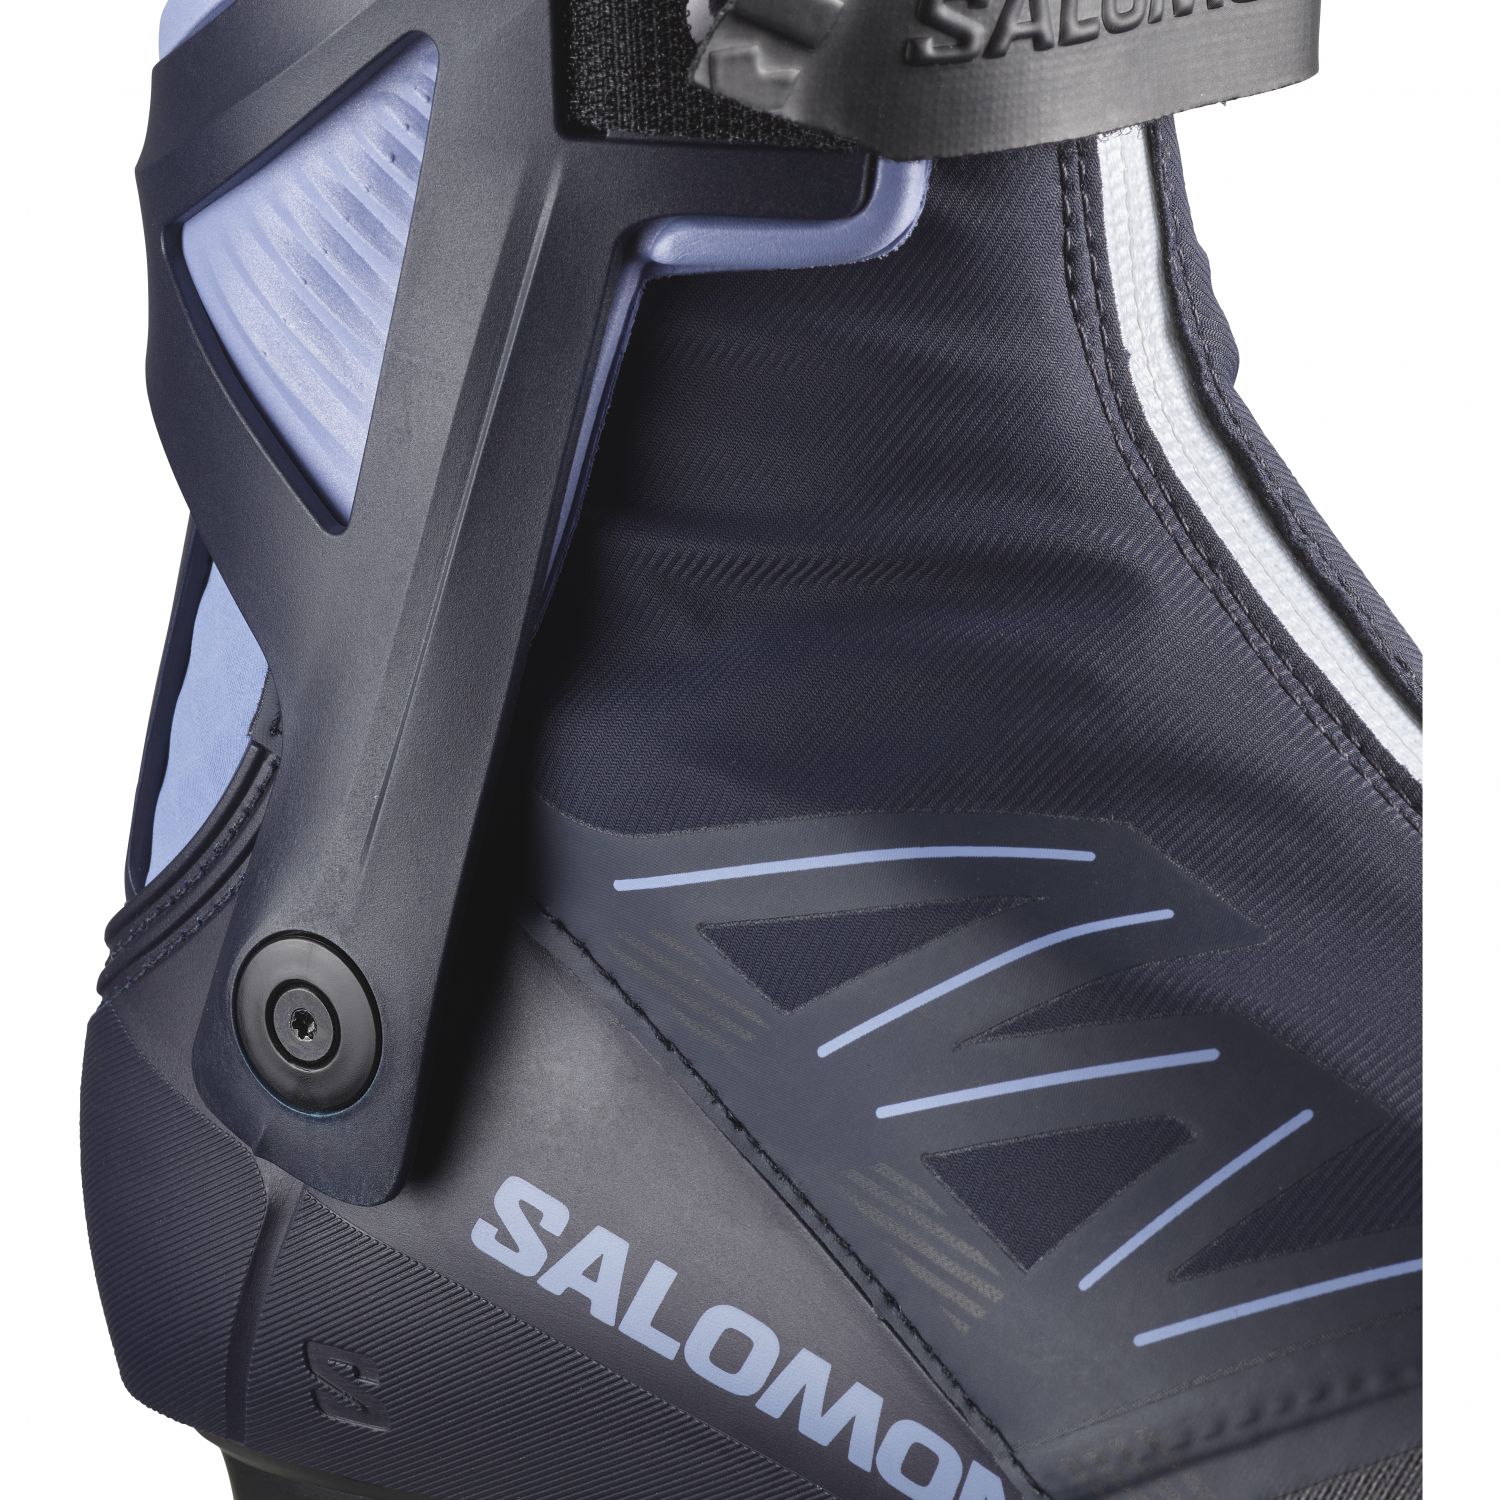 Salomon RS8 Vitane Prolink, bottes de ski de fond, femmes, bleu foncé